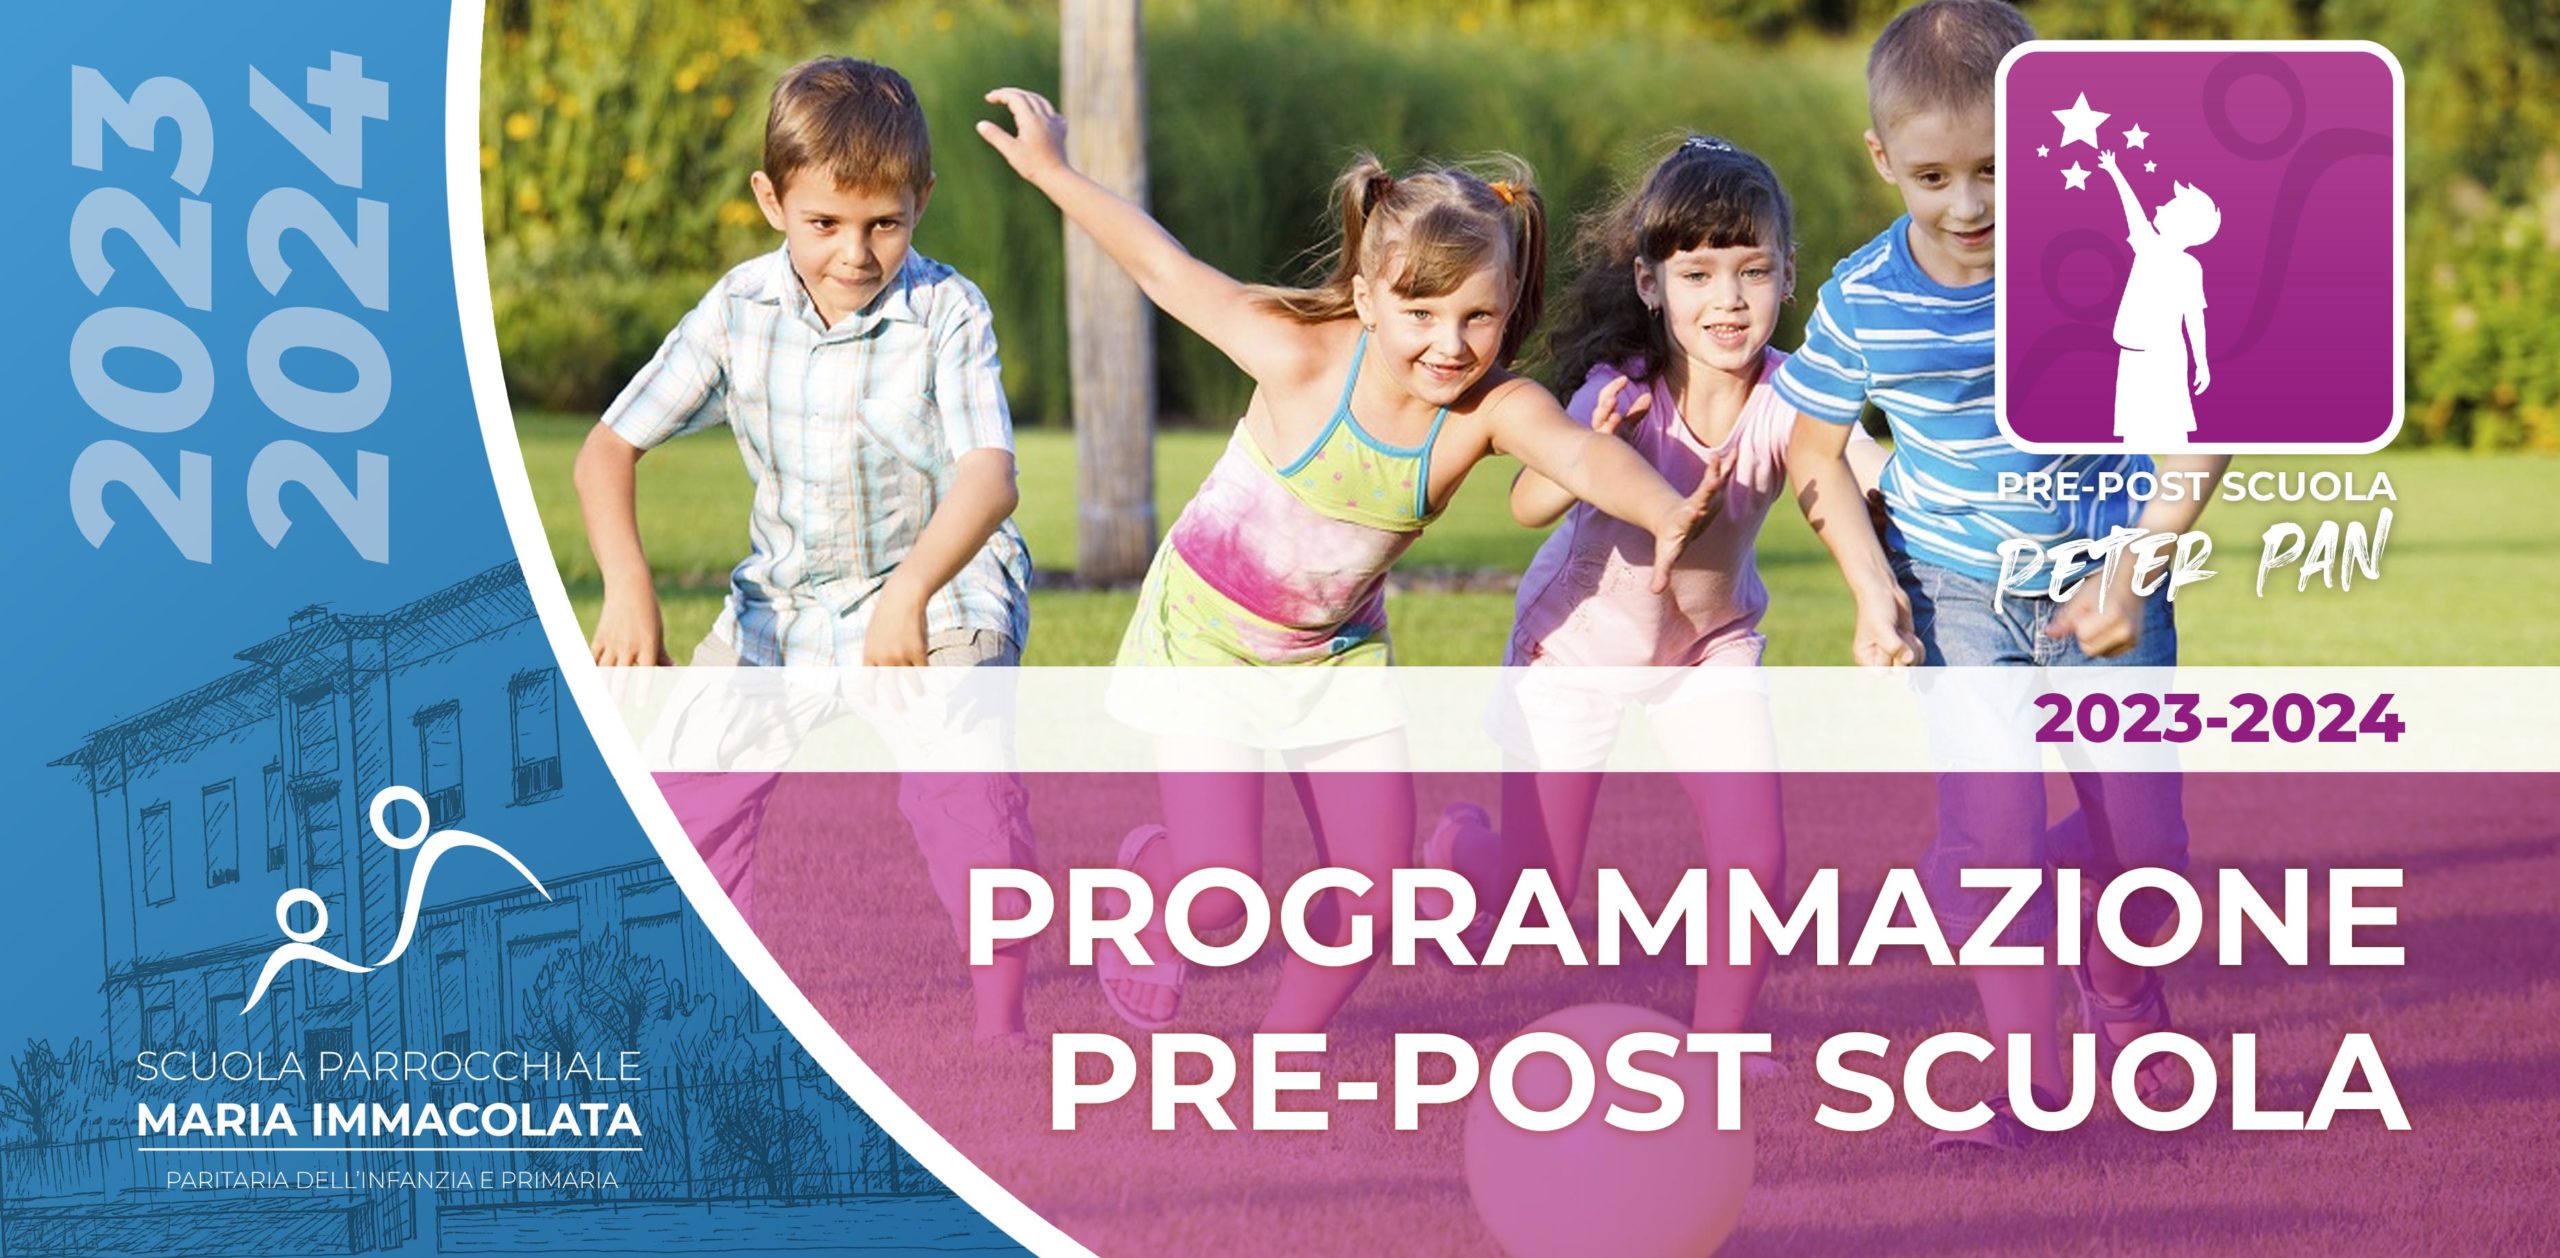 Programmazione e novità Pre-post scuola 2023-2024